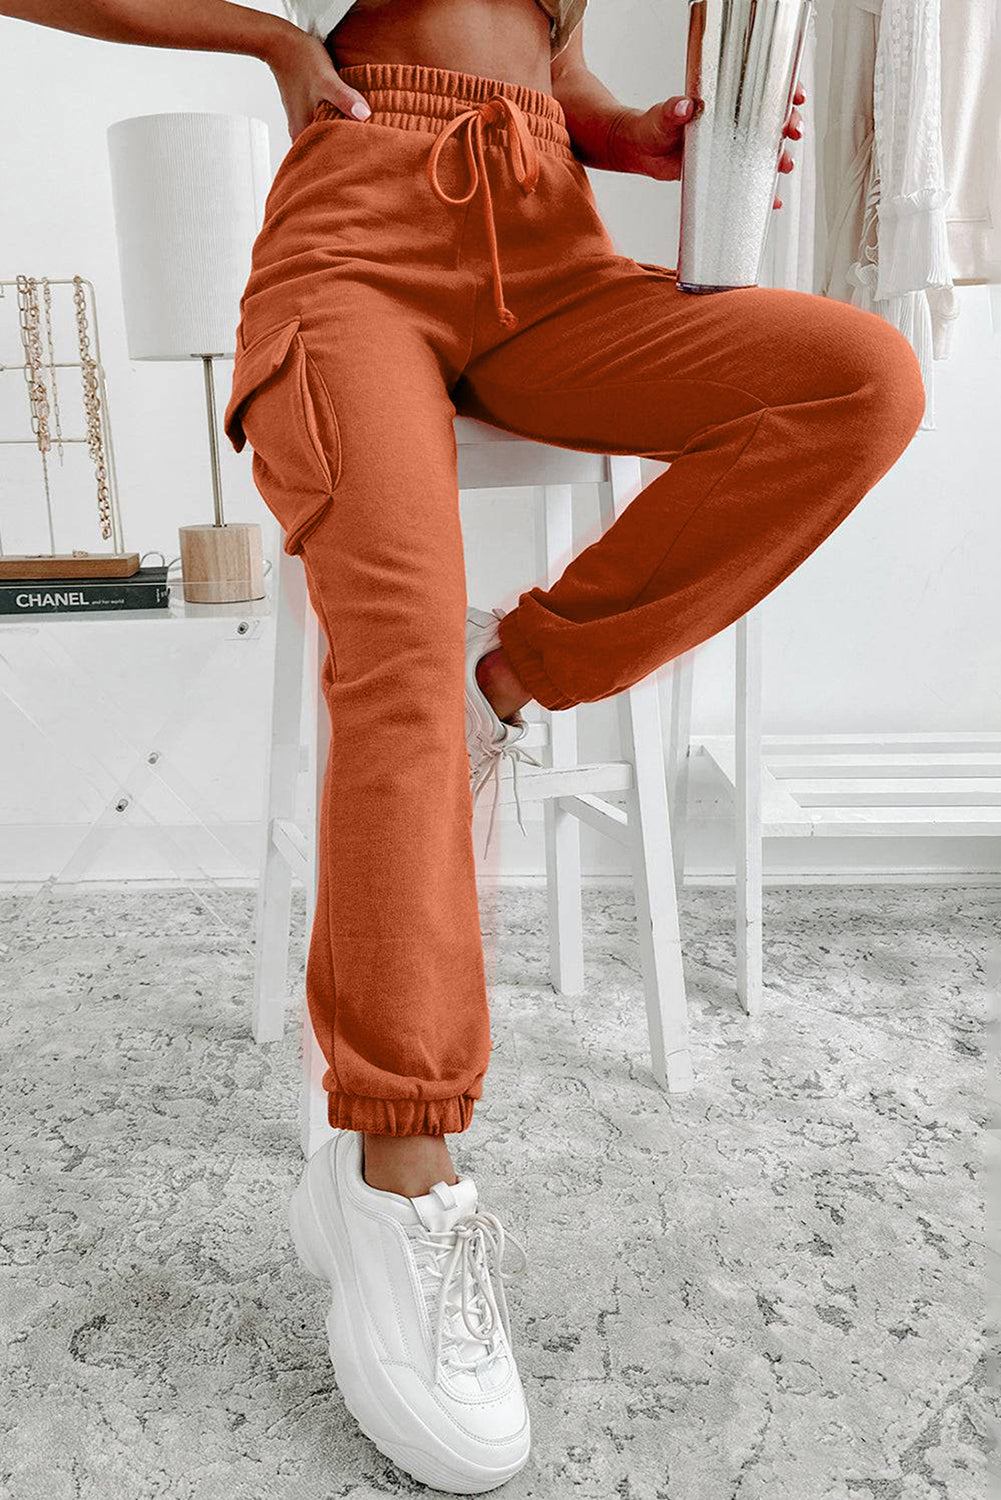 Pantaloni jogger con tasche cargo arancioni con coulisse